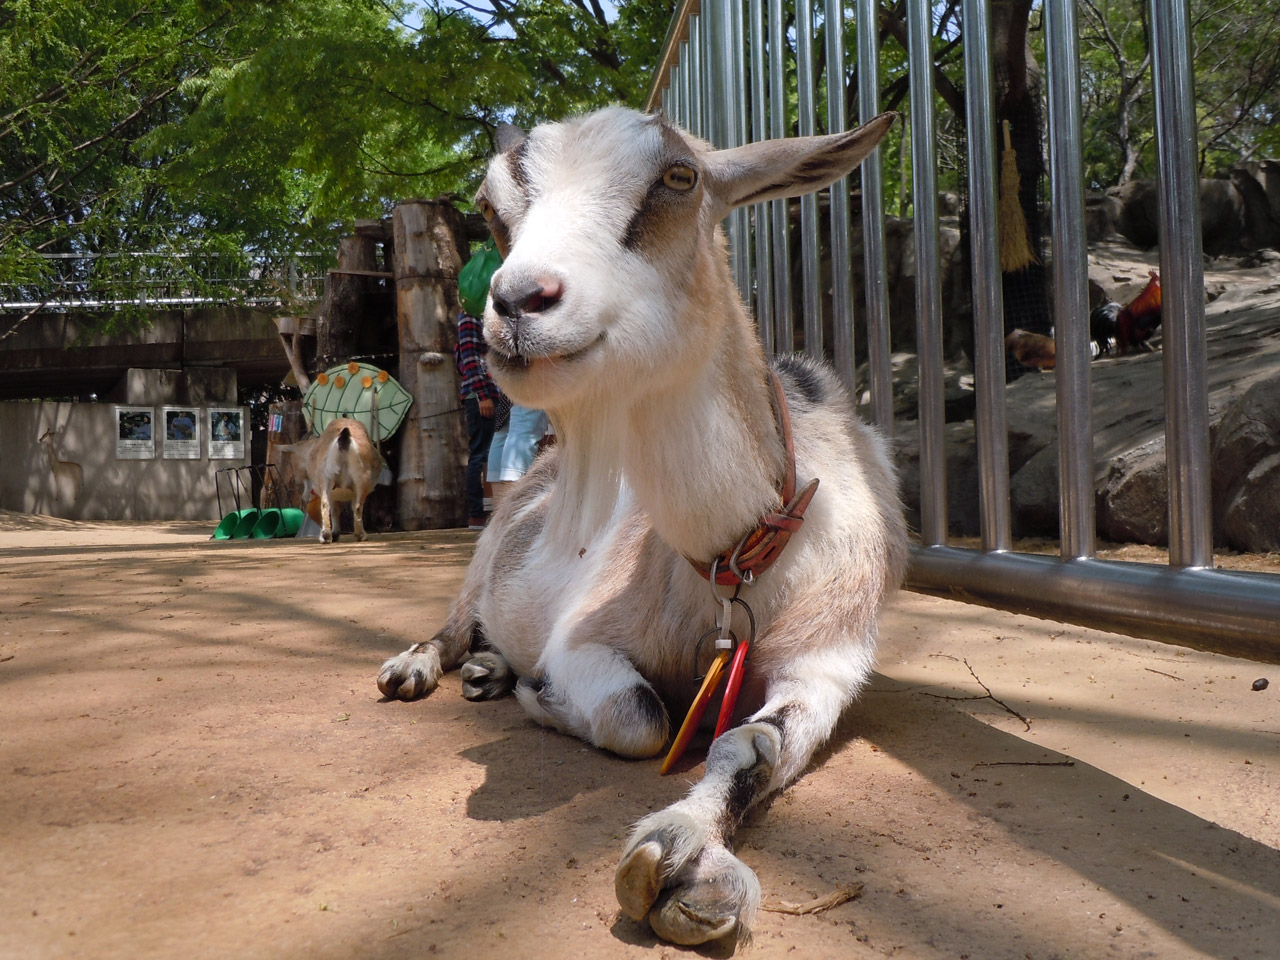 she‐goat goat zoo free photo